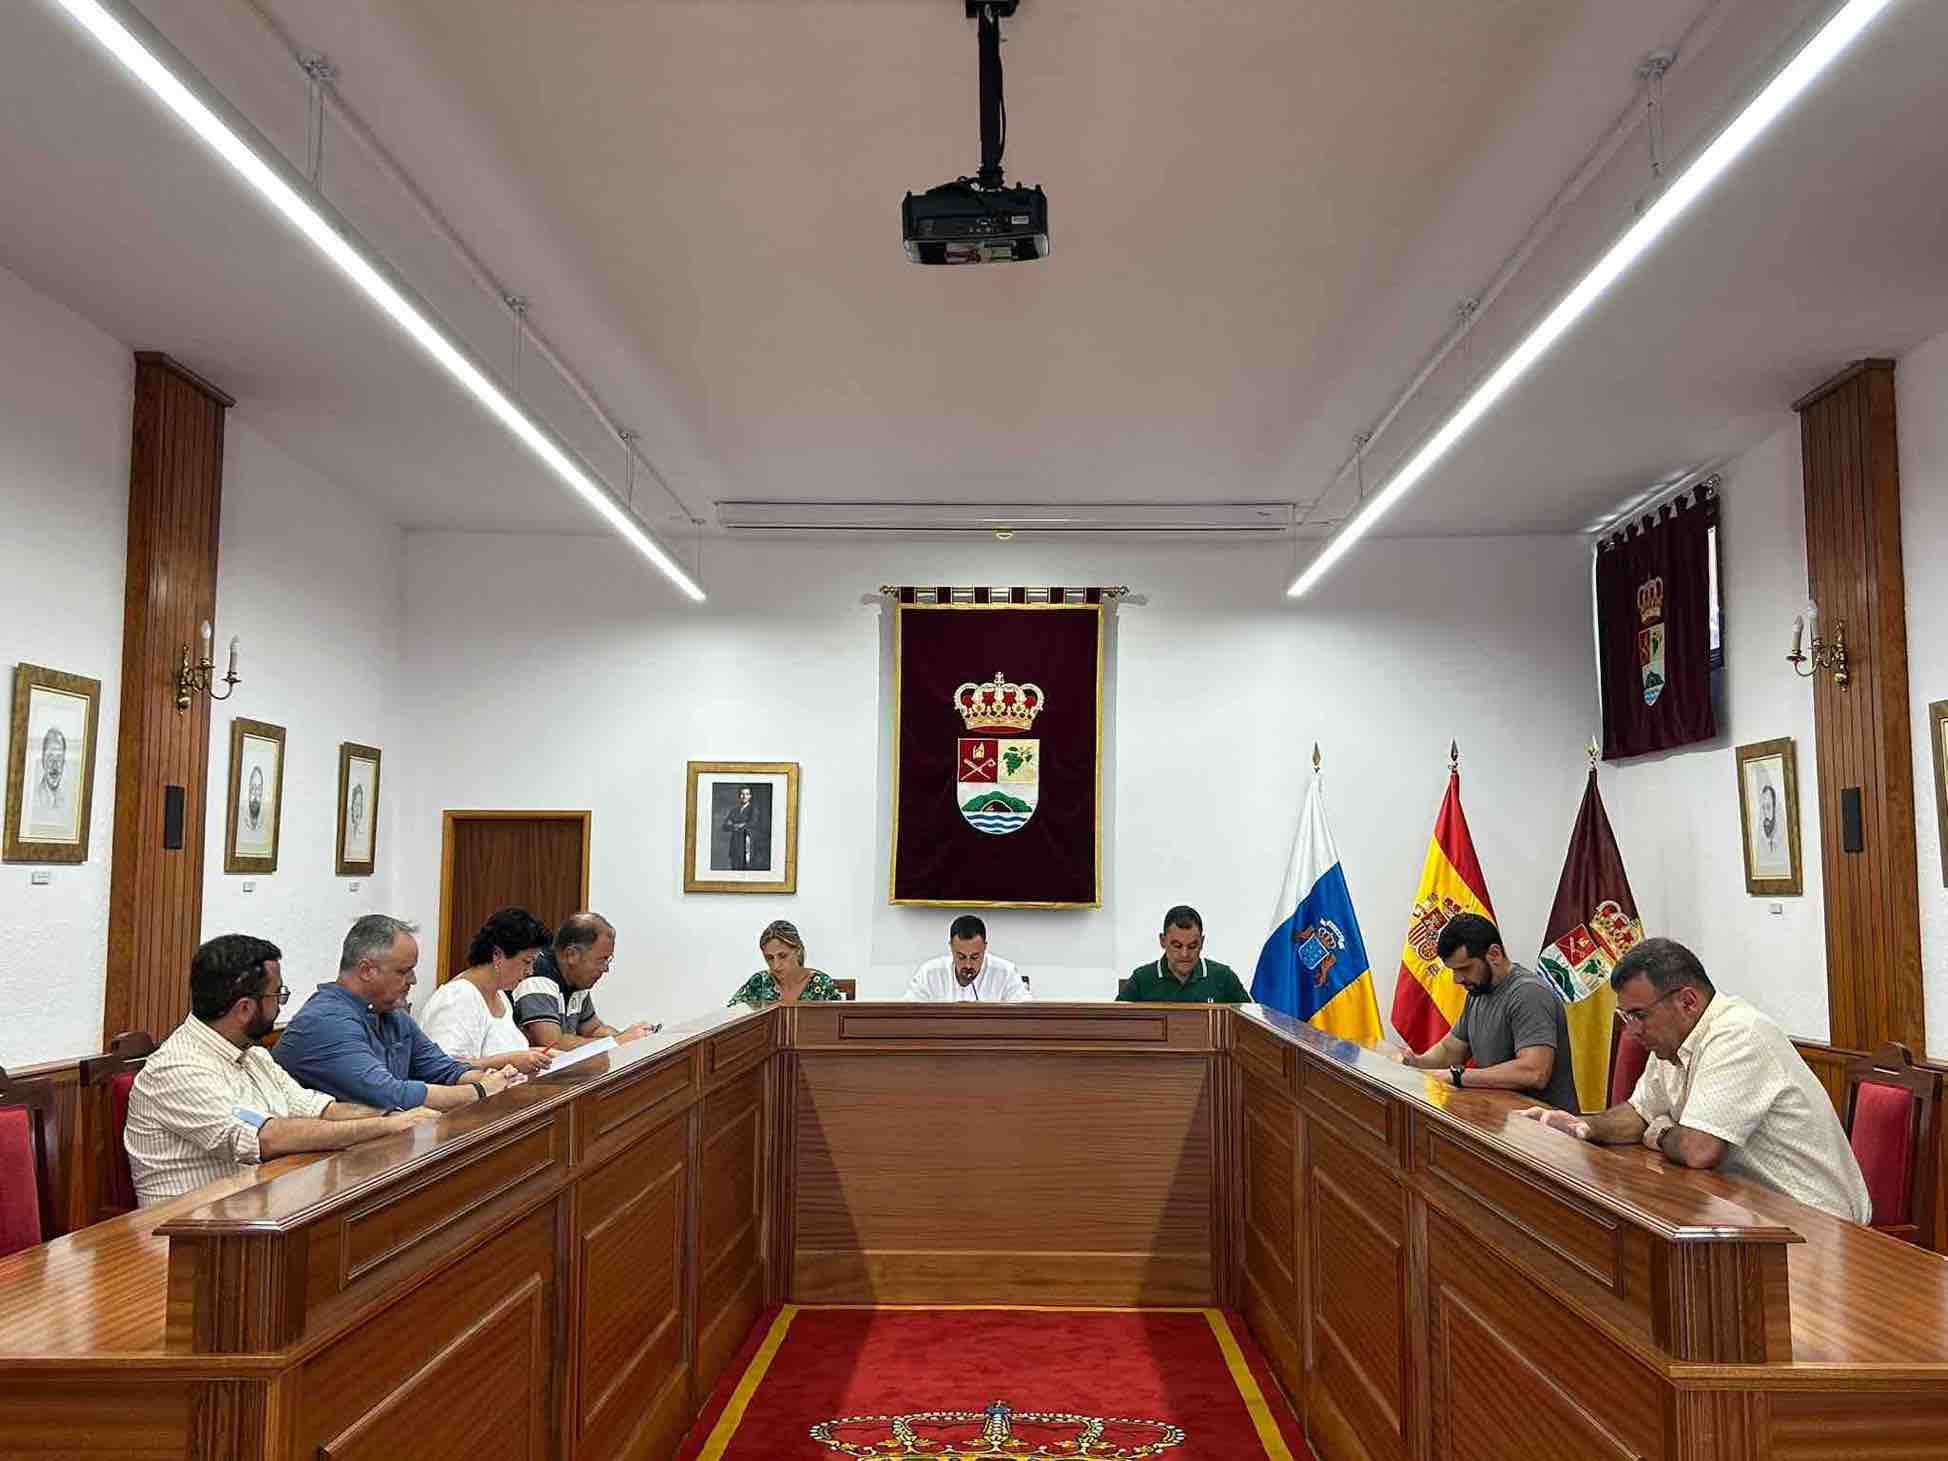 Idafe Hernández designa las áreas de gobierno del Ayuntamiento de Villa de Mazo   